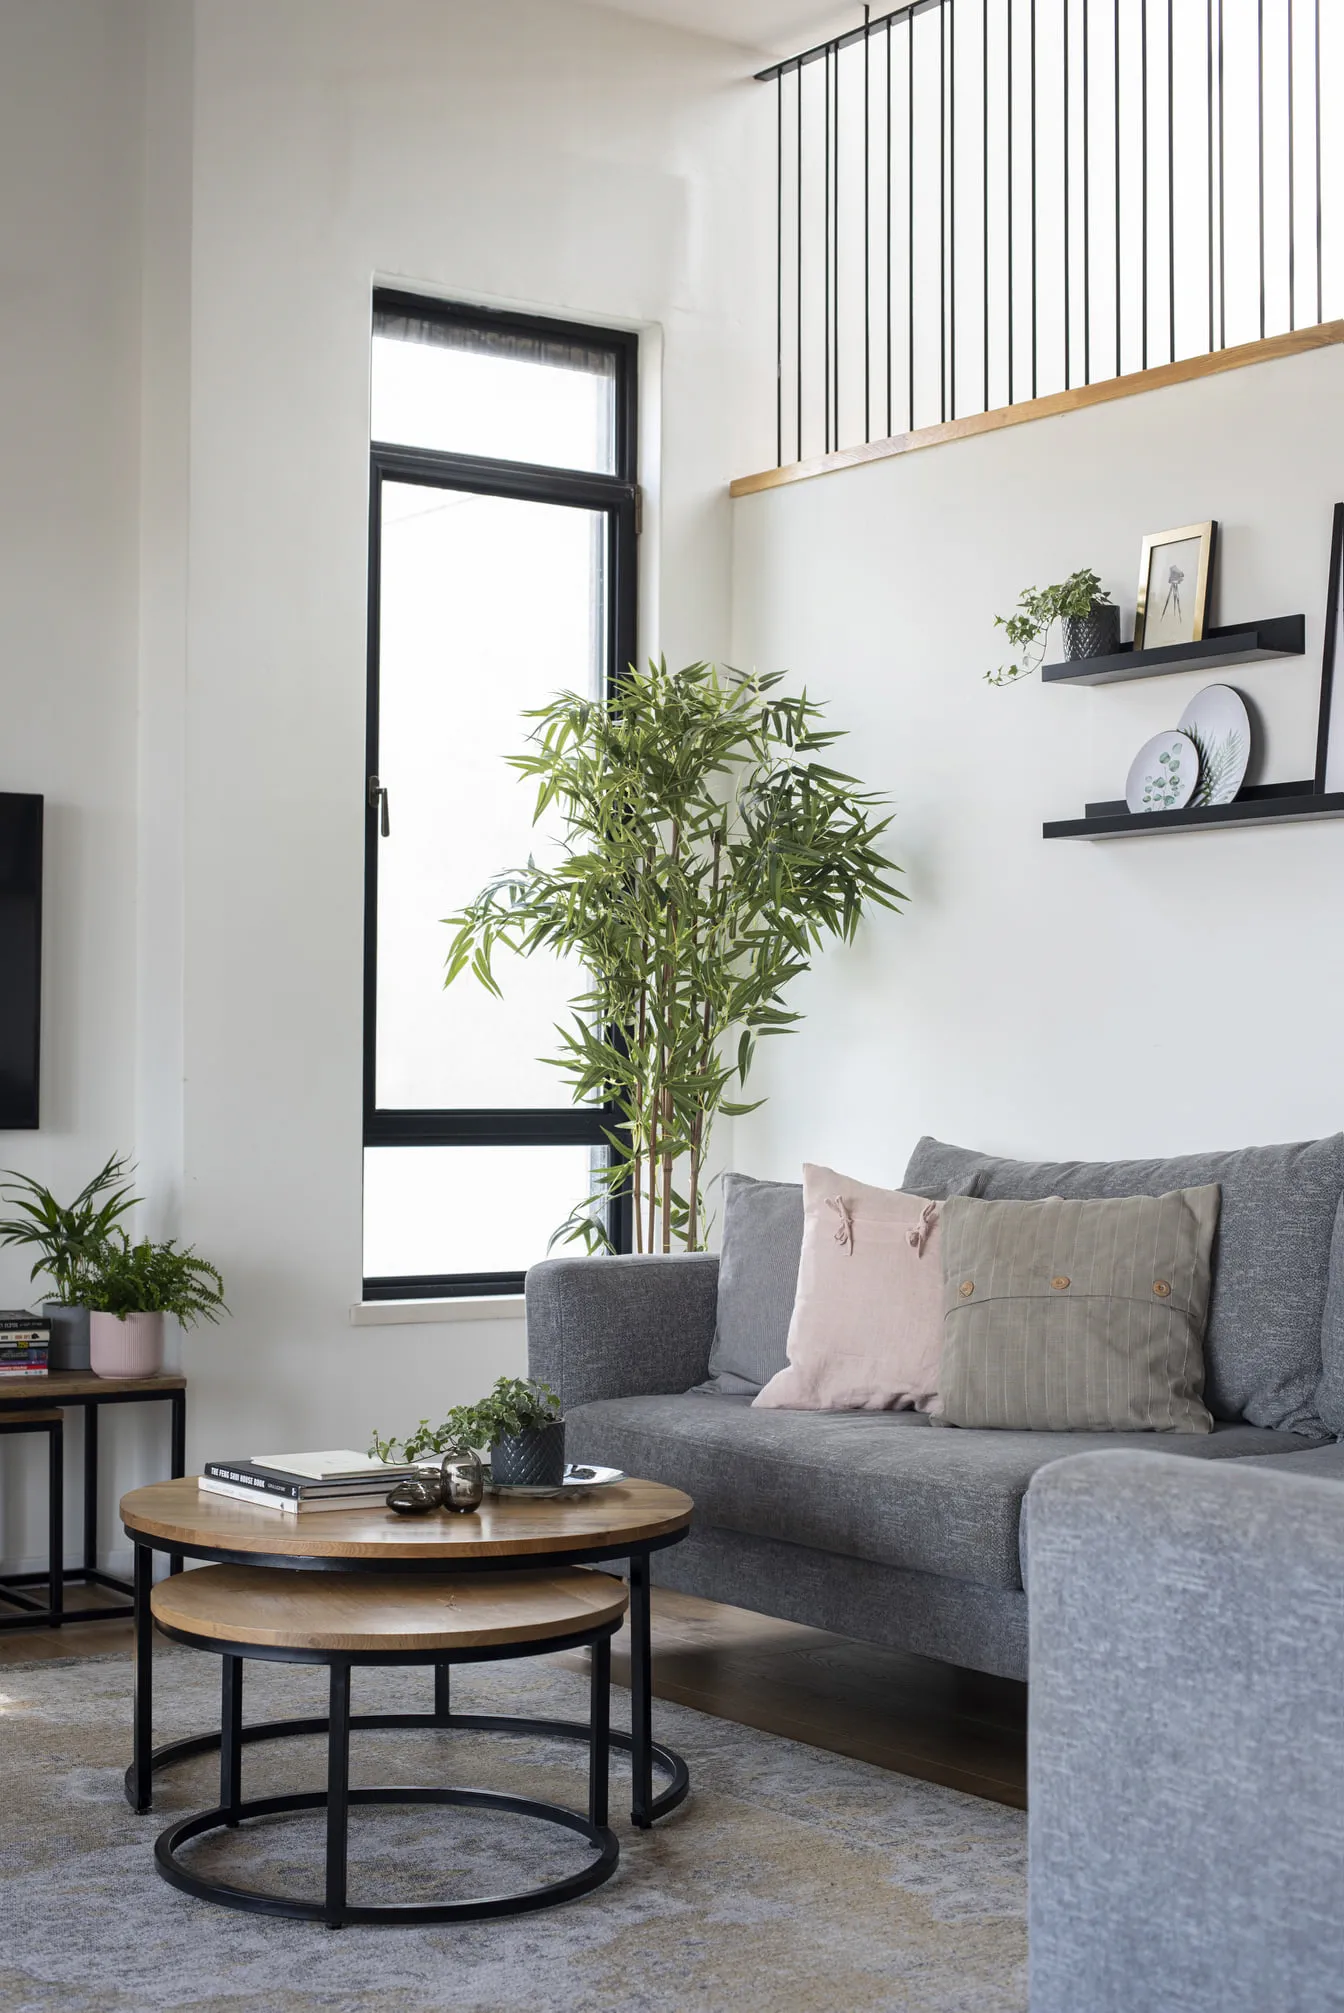 Scottsdale, AZ home remodel - Living room